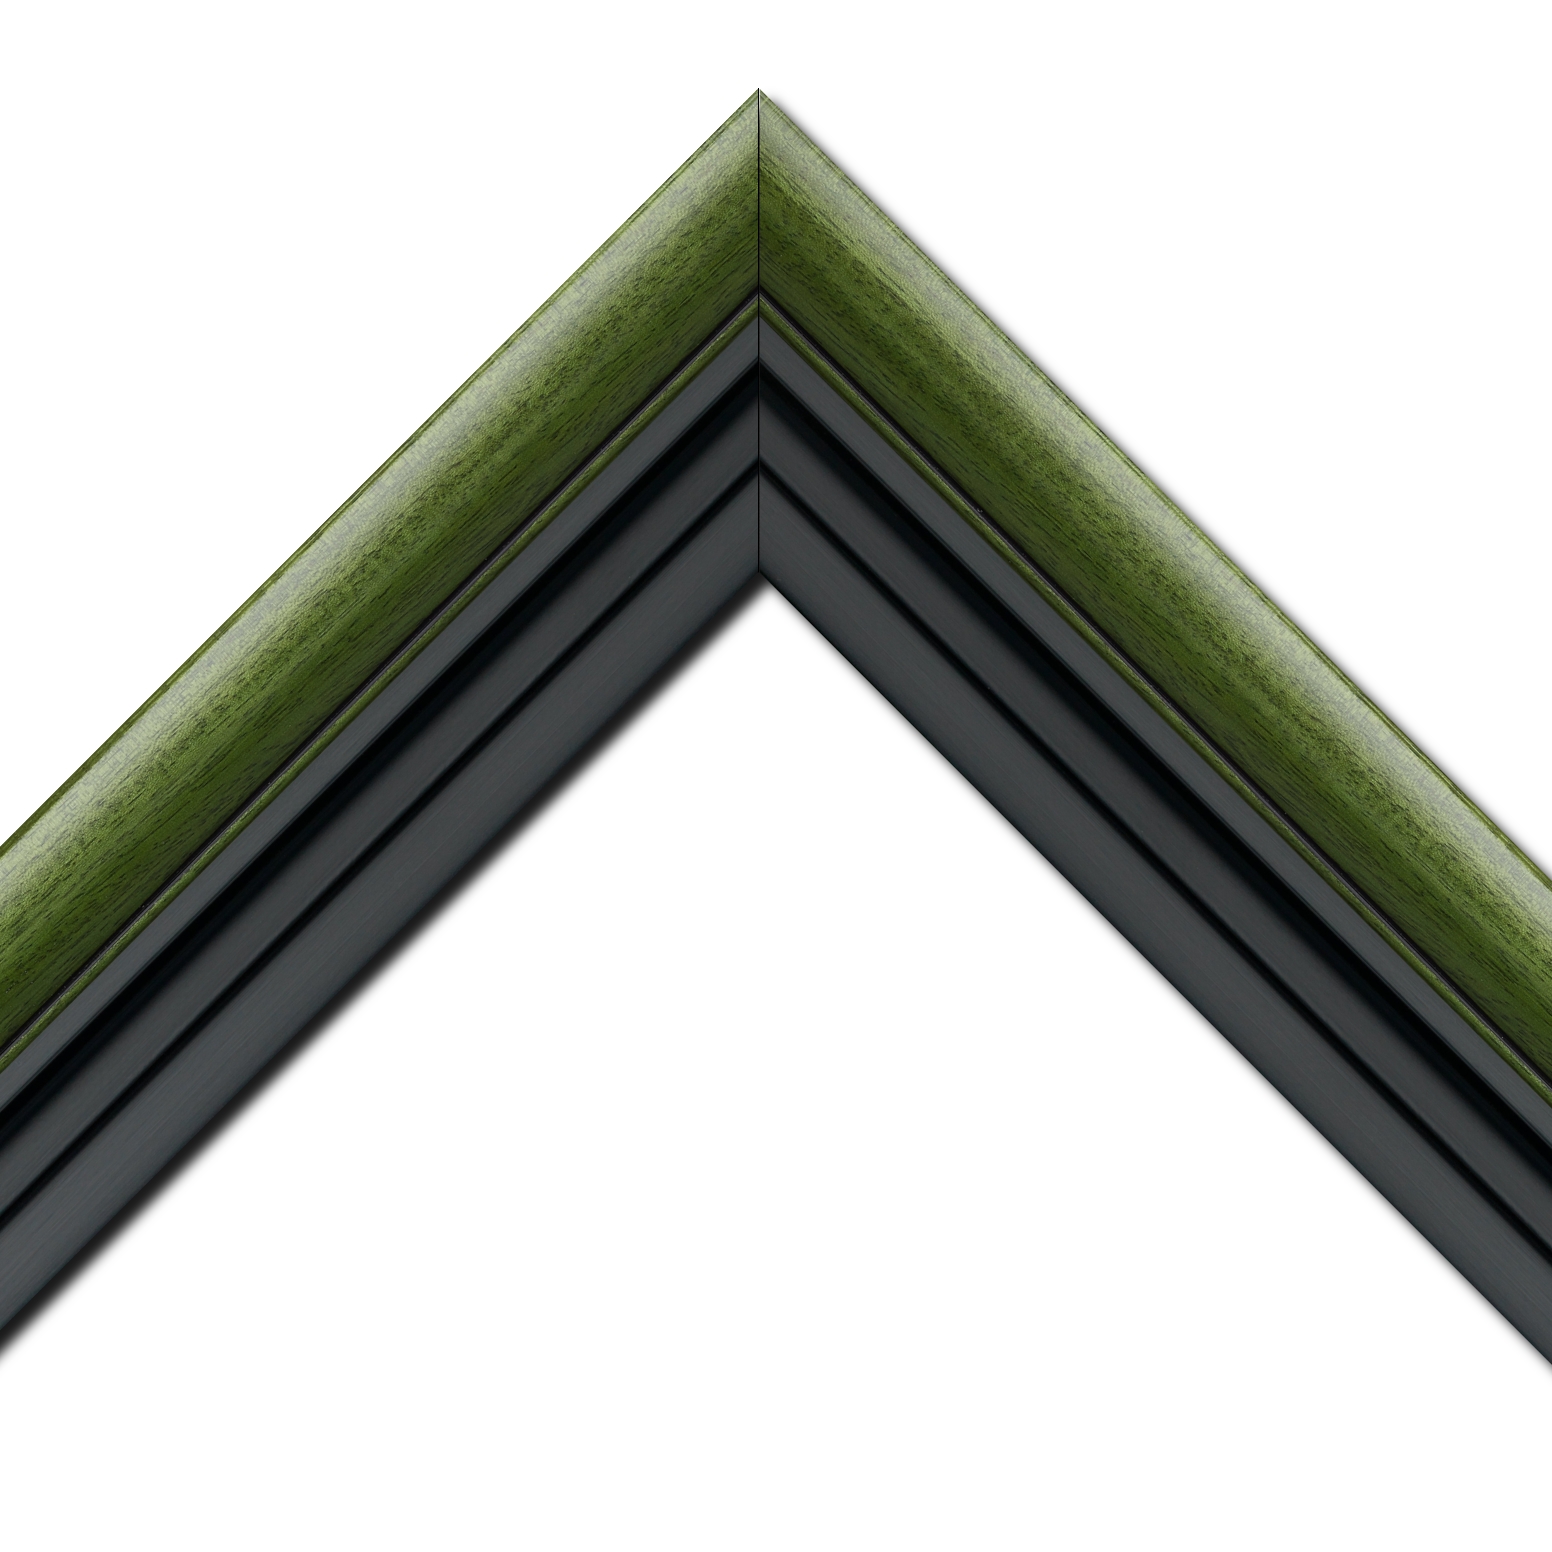 Baguette bois profil arrondi largeur 4.7cm couleur vert sapin satiné rehaussé d'un filet noir + bois caisse américaine profil escalier largeur 4.4cm noir mat   (spécialement conçu pour les châssis d'une épaisseur jusqu’à 2.5cm ) largeur total du cadre : 8.3cm